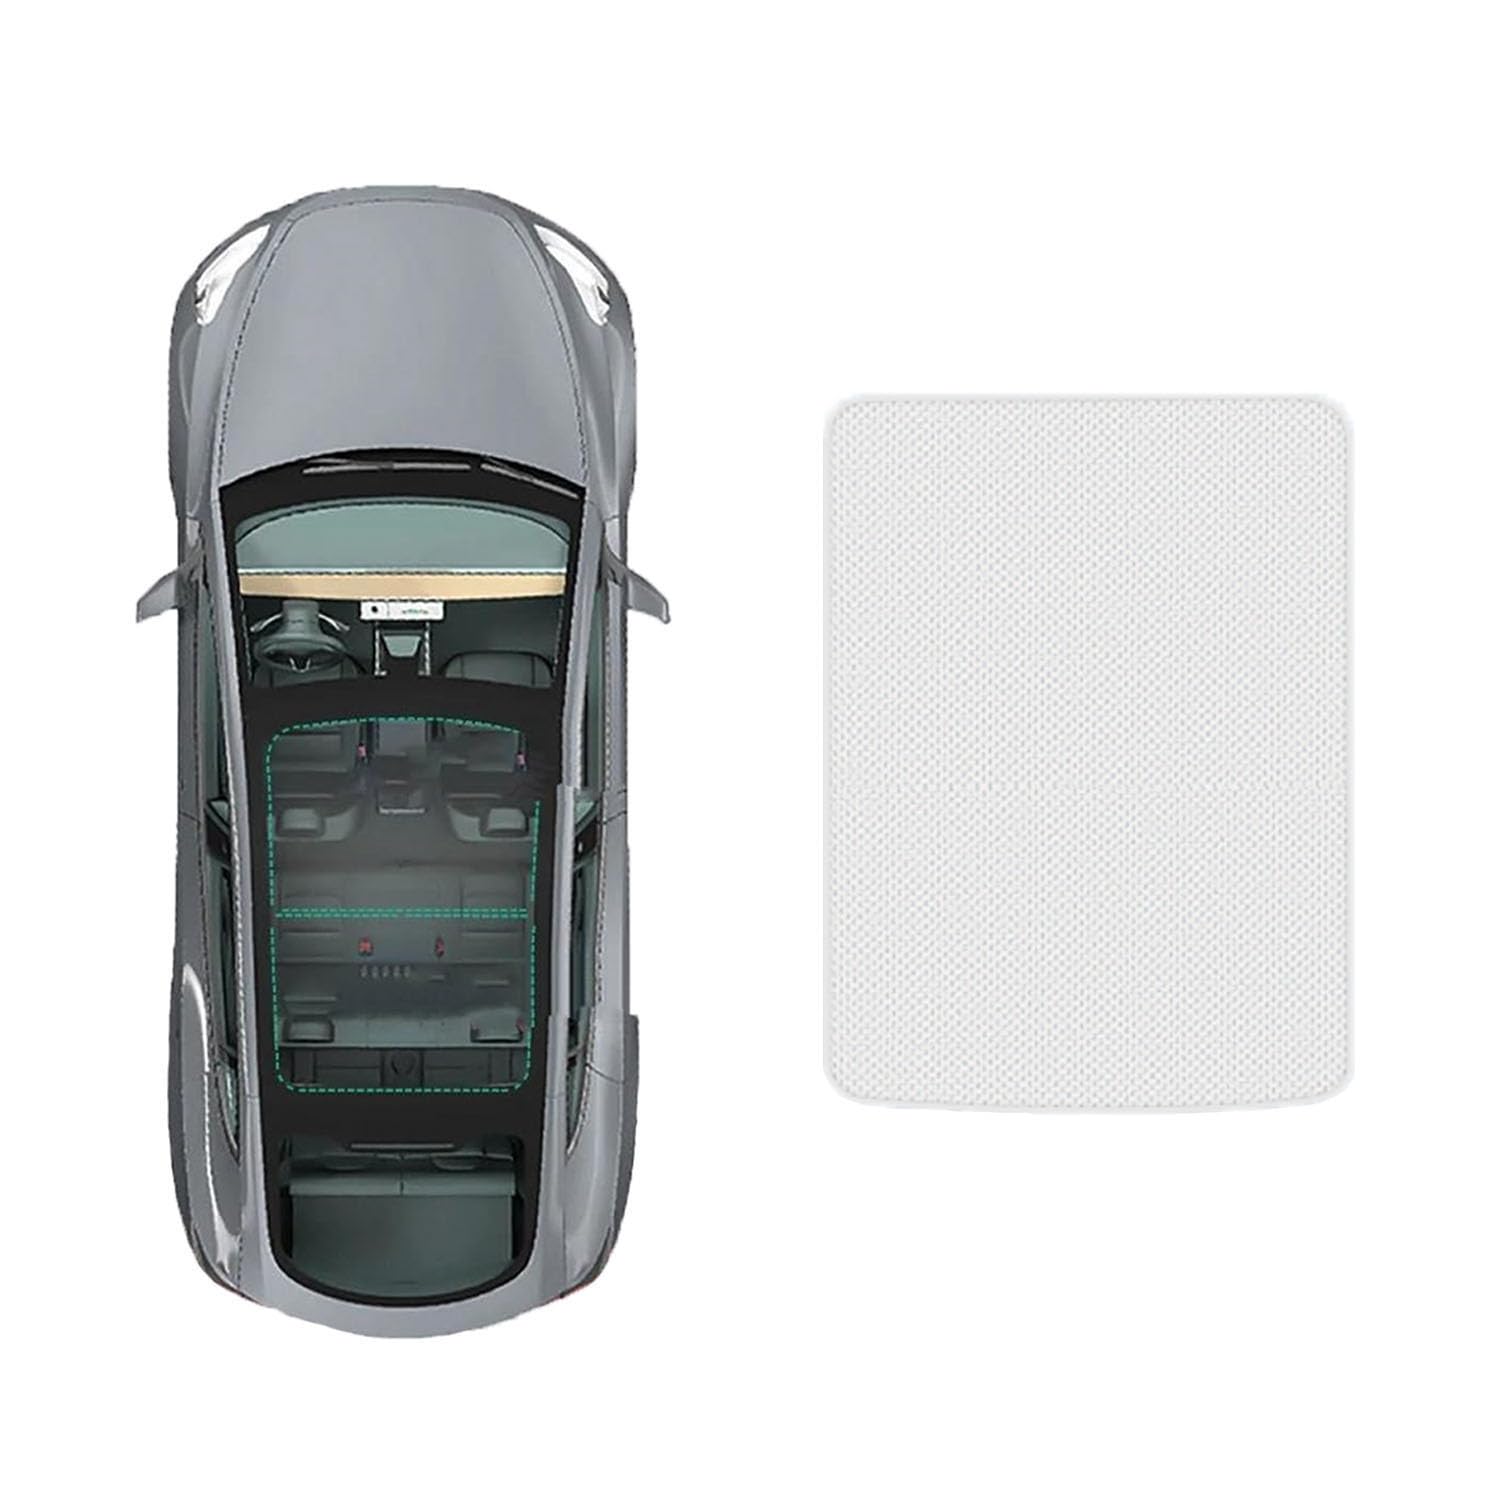 Auto Schiebedach Sonnenschirm Vorhang Für VW polo plus 2019-,UV-Schutz Schattierung vorne Heckscheibe Sonnenschutz,A-Gray white regular Style von JiAQen